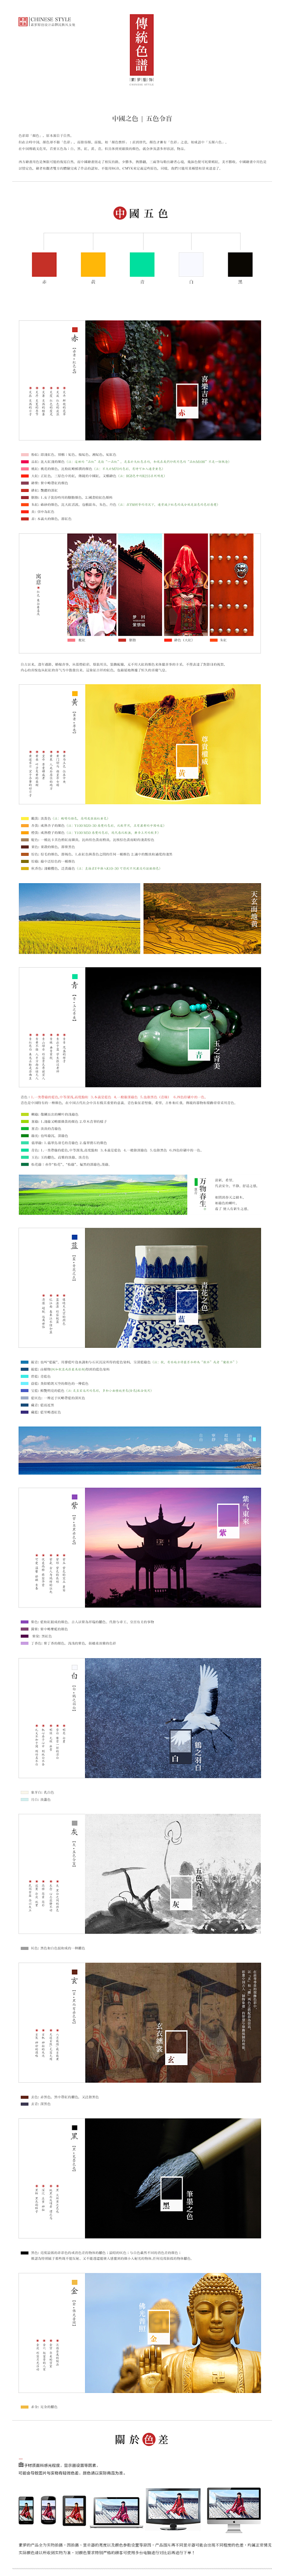 传统色谱 中国风 - 首页设计欣赏网站-...